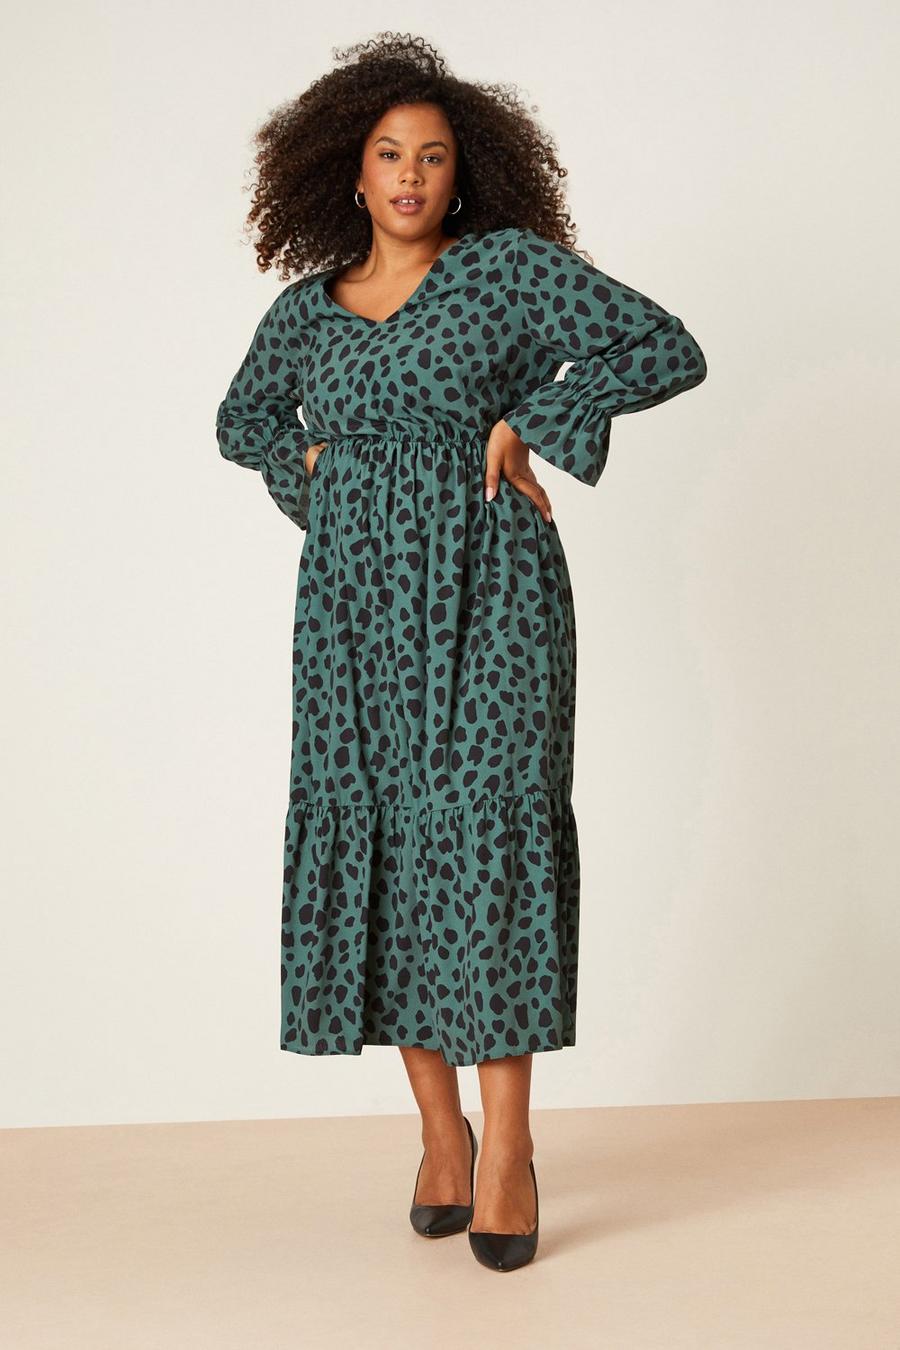 Plus Size Plus Size Clothing | Dorothy Perkins UK